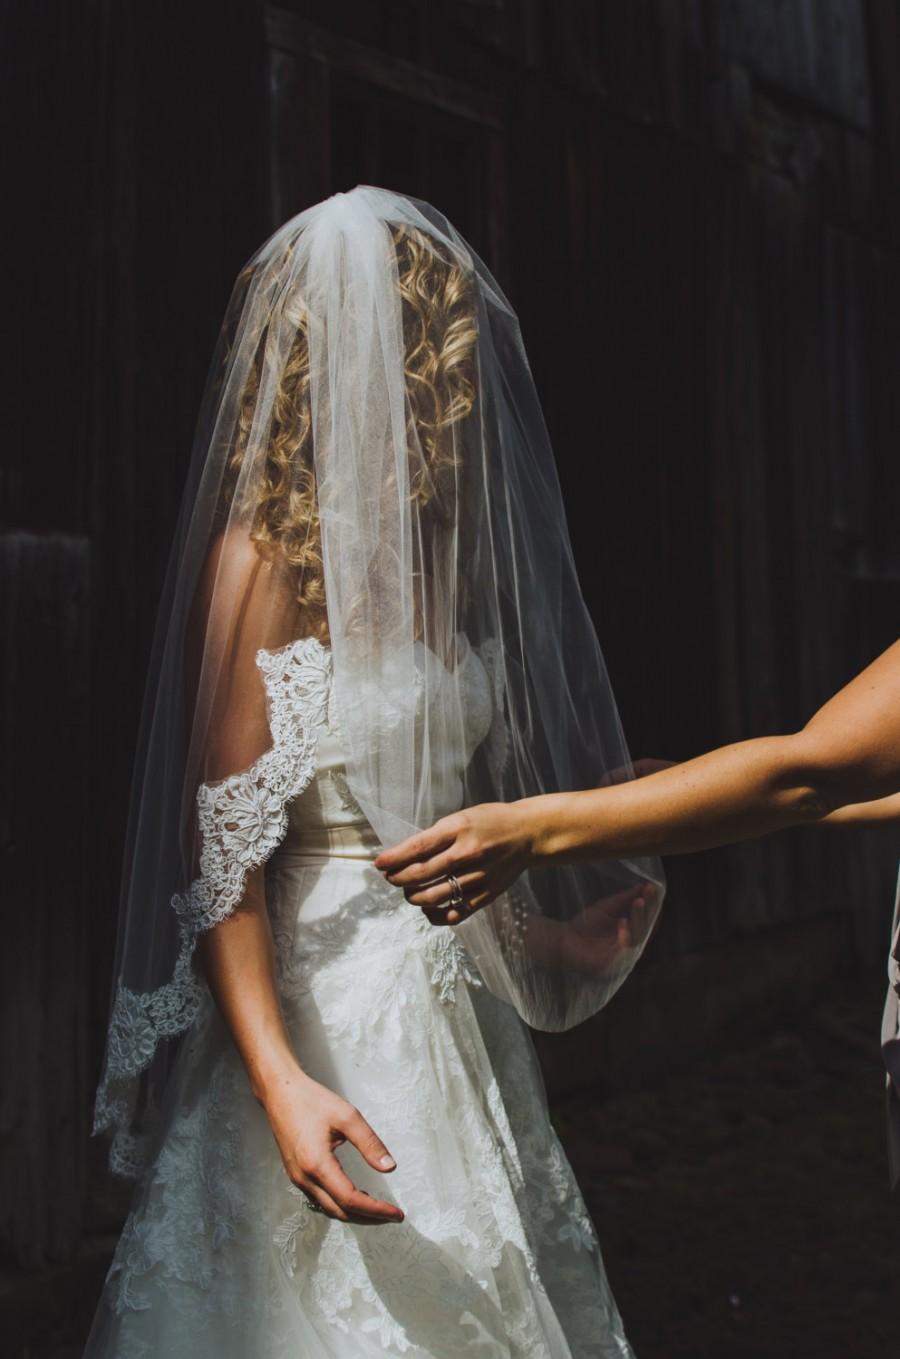 زفاف - 2 tier 40 inches finger tip/waist length with 4 inch Alencon lace wedding veil, bridal veil-  in white, light ivory, and ivory